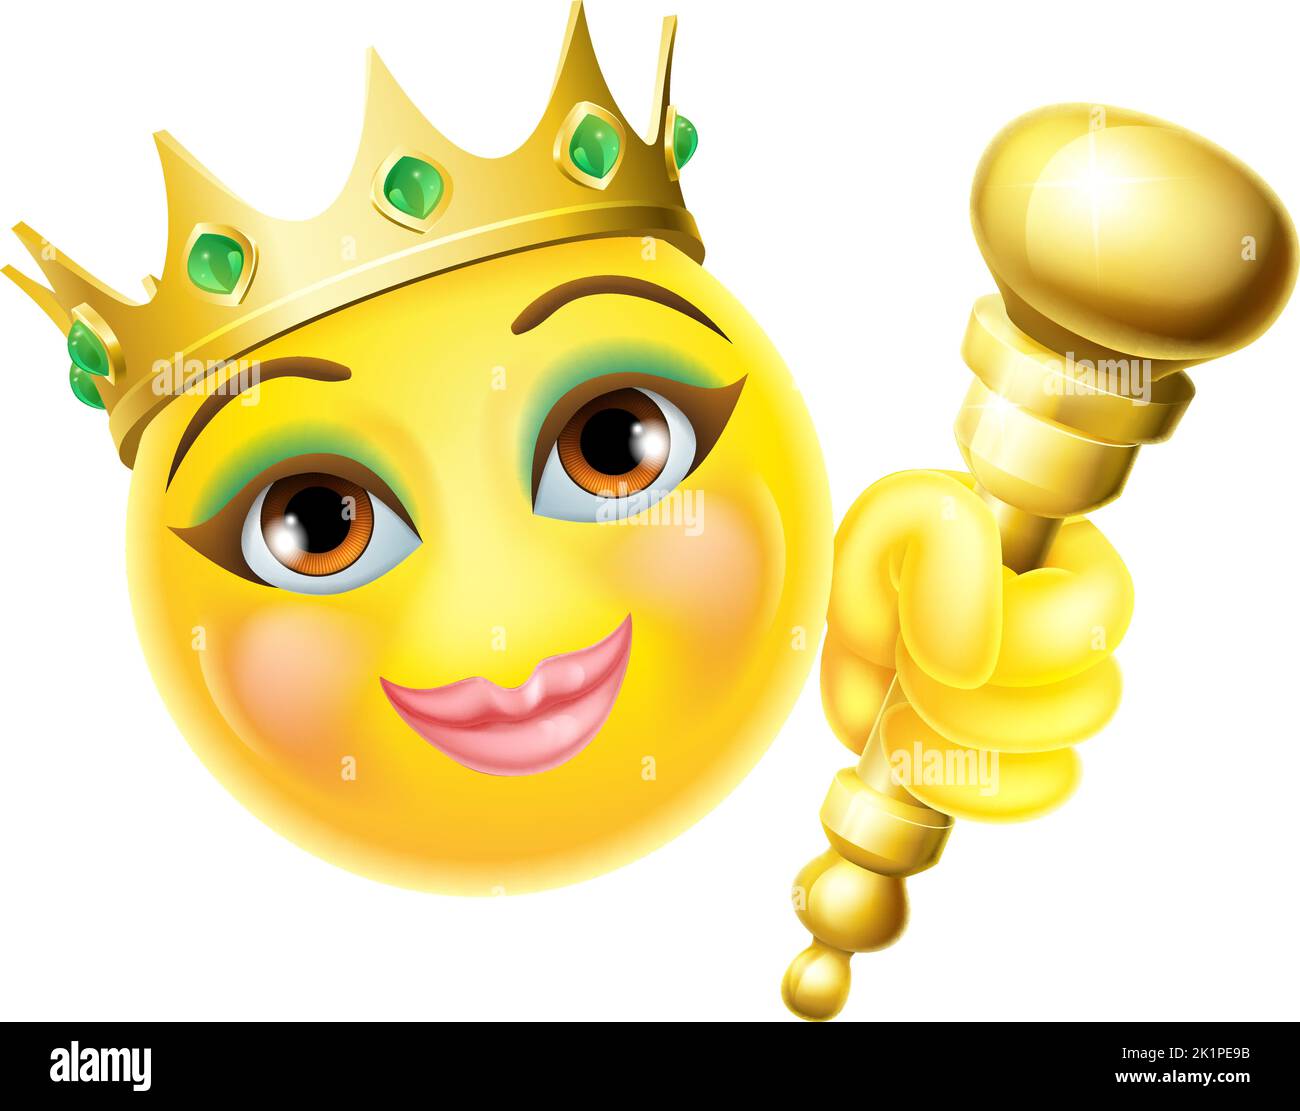 Queen Princess Emoticon Gold Crown Cartoon Face Stock Vector